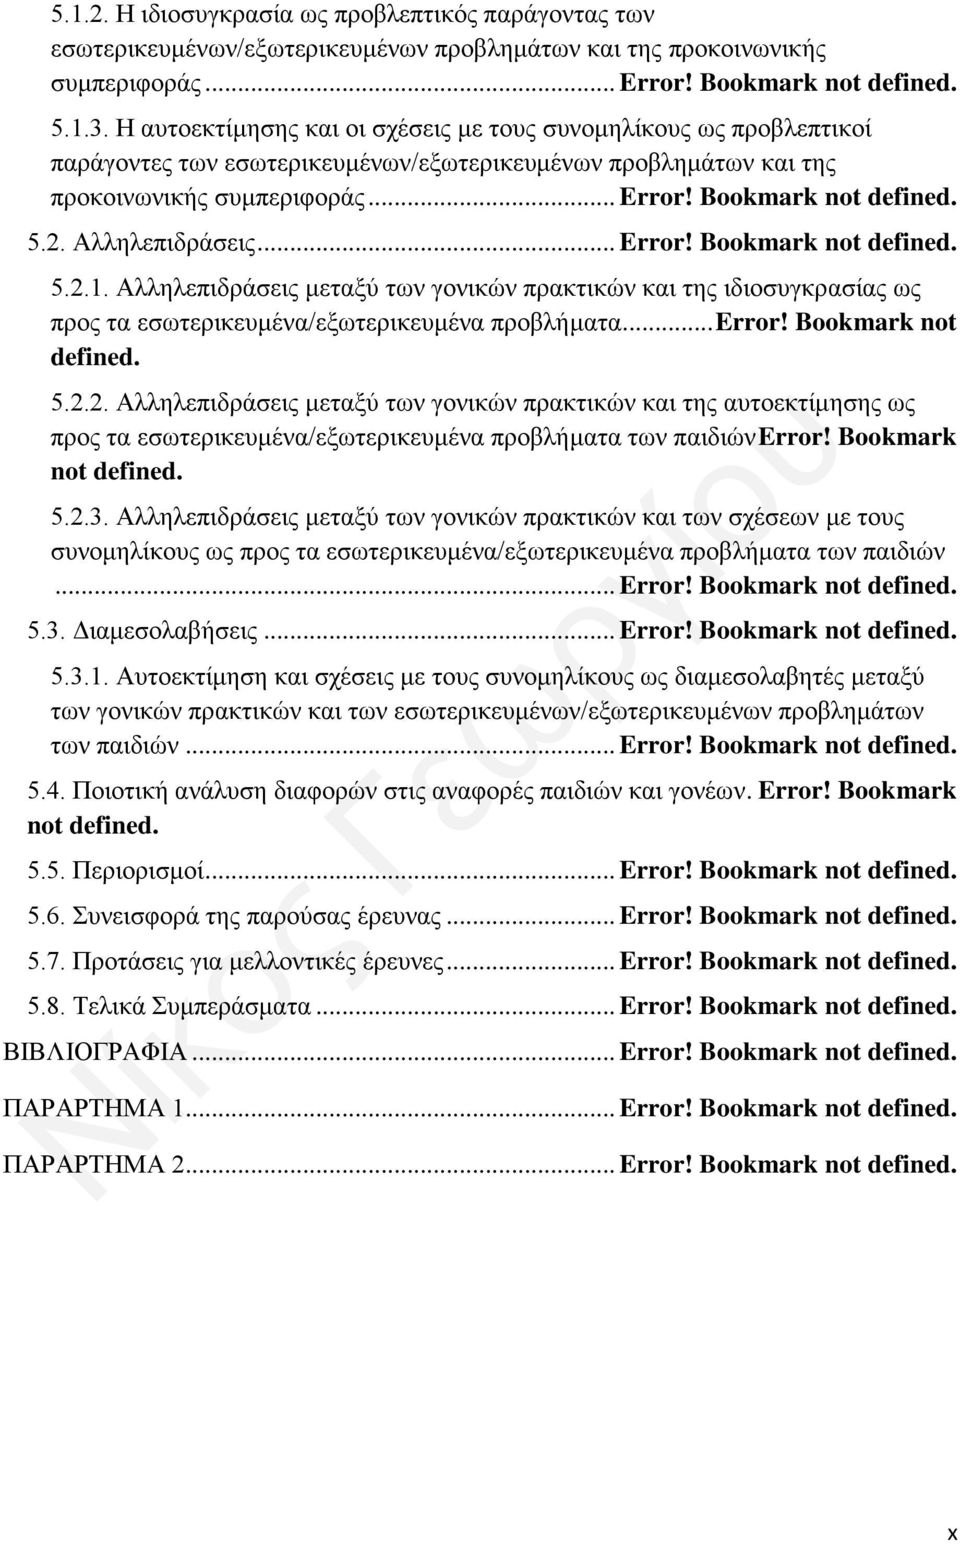 Αλληλεπιδράσεις... Error! Bookmark not defined. 5.2.1. Αλληλεπιδράσεις μεταξύ των γονικών πρακτικών και της ιδιοσυγκρασίας ως προς τα εσωτερικευμένα/εξωτερικευμένα προβλήματα... Error! Bookmark not defined. 5.2.2. Αλληλεπιδράσεις μεταξύ των γονικών πρακτικών και της αυτοεκτίμησης ως προς τα εσωτερικευμένα/εξωτερικευμένα προβλήματα των παιδιών Error!